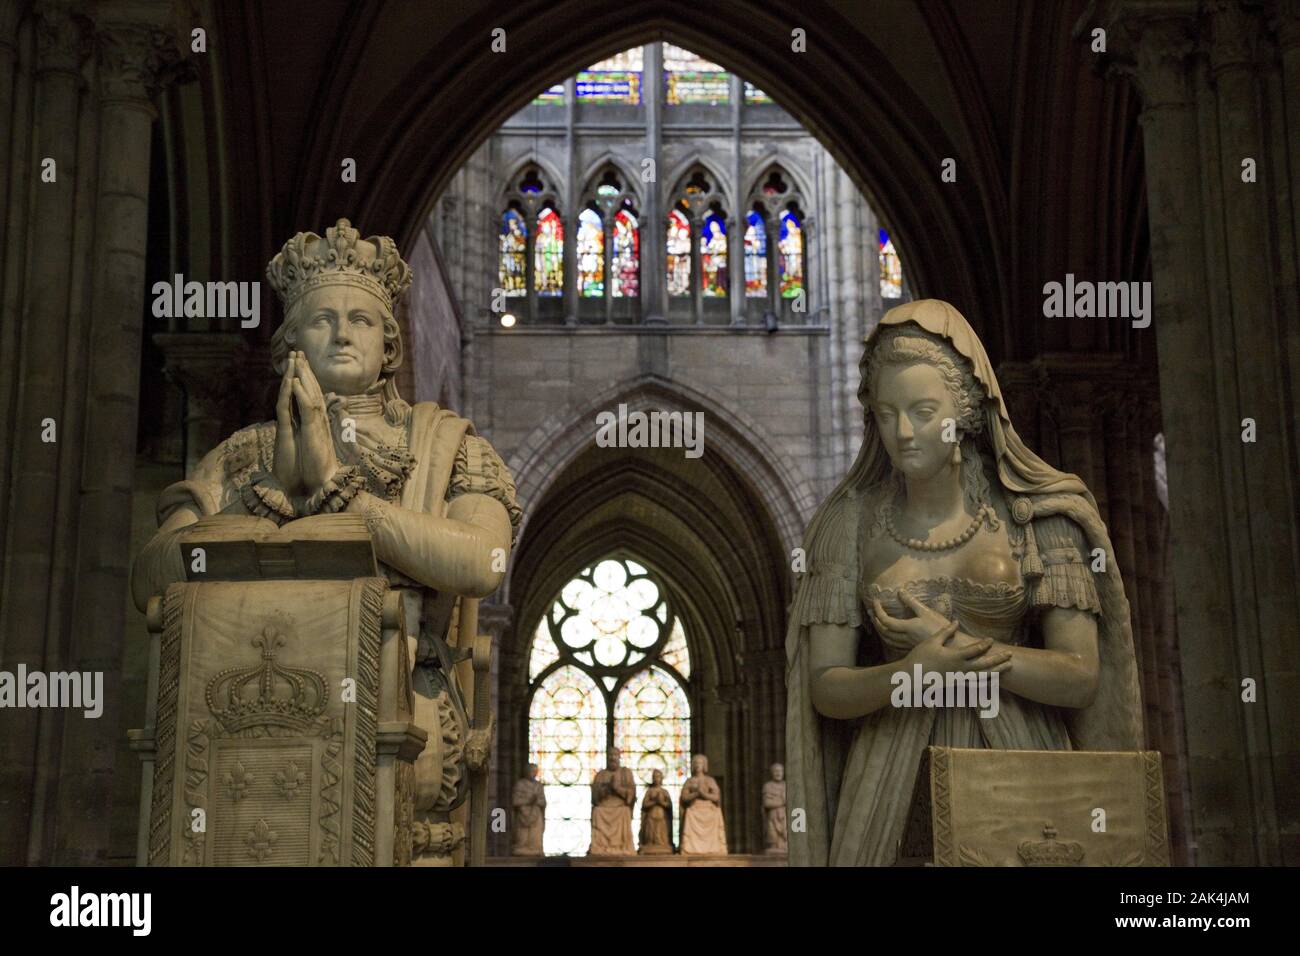 Grablege der französischen Könige in der Kathedrale von Saint-Denis, Paris, Frankreich | Verwendung weltweit Stockfoto